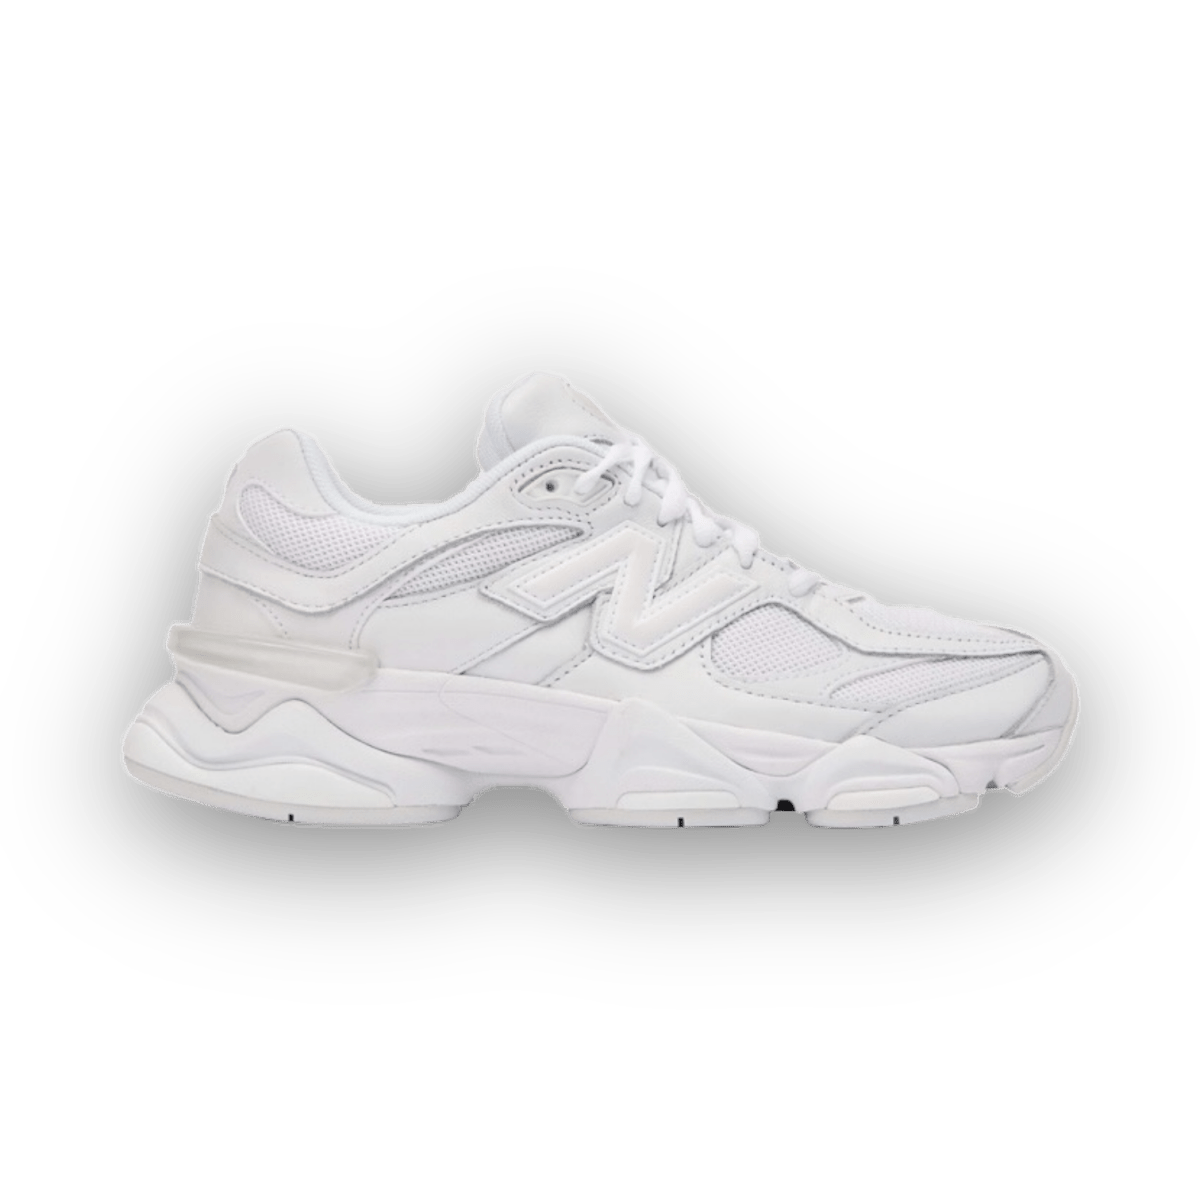 New Balance 9060 White - Low Sneaker - Jawns on Fire Sneakers & Streetwear